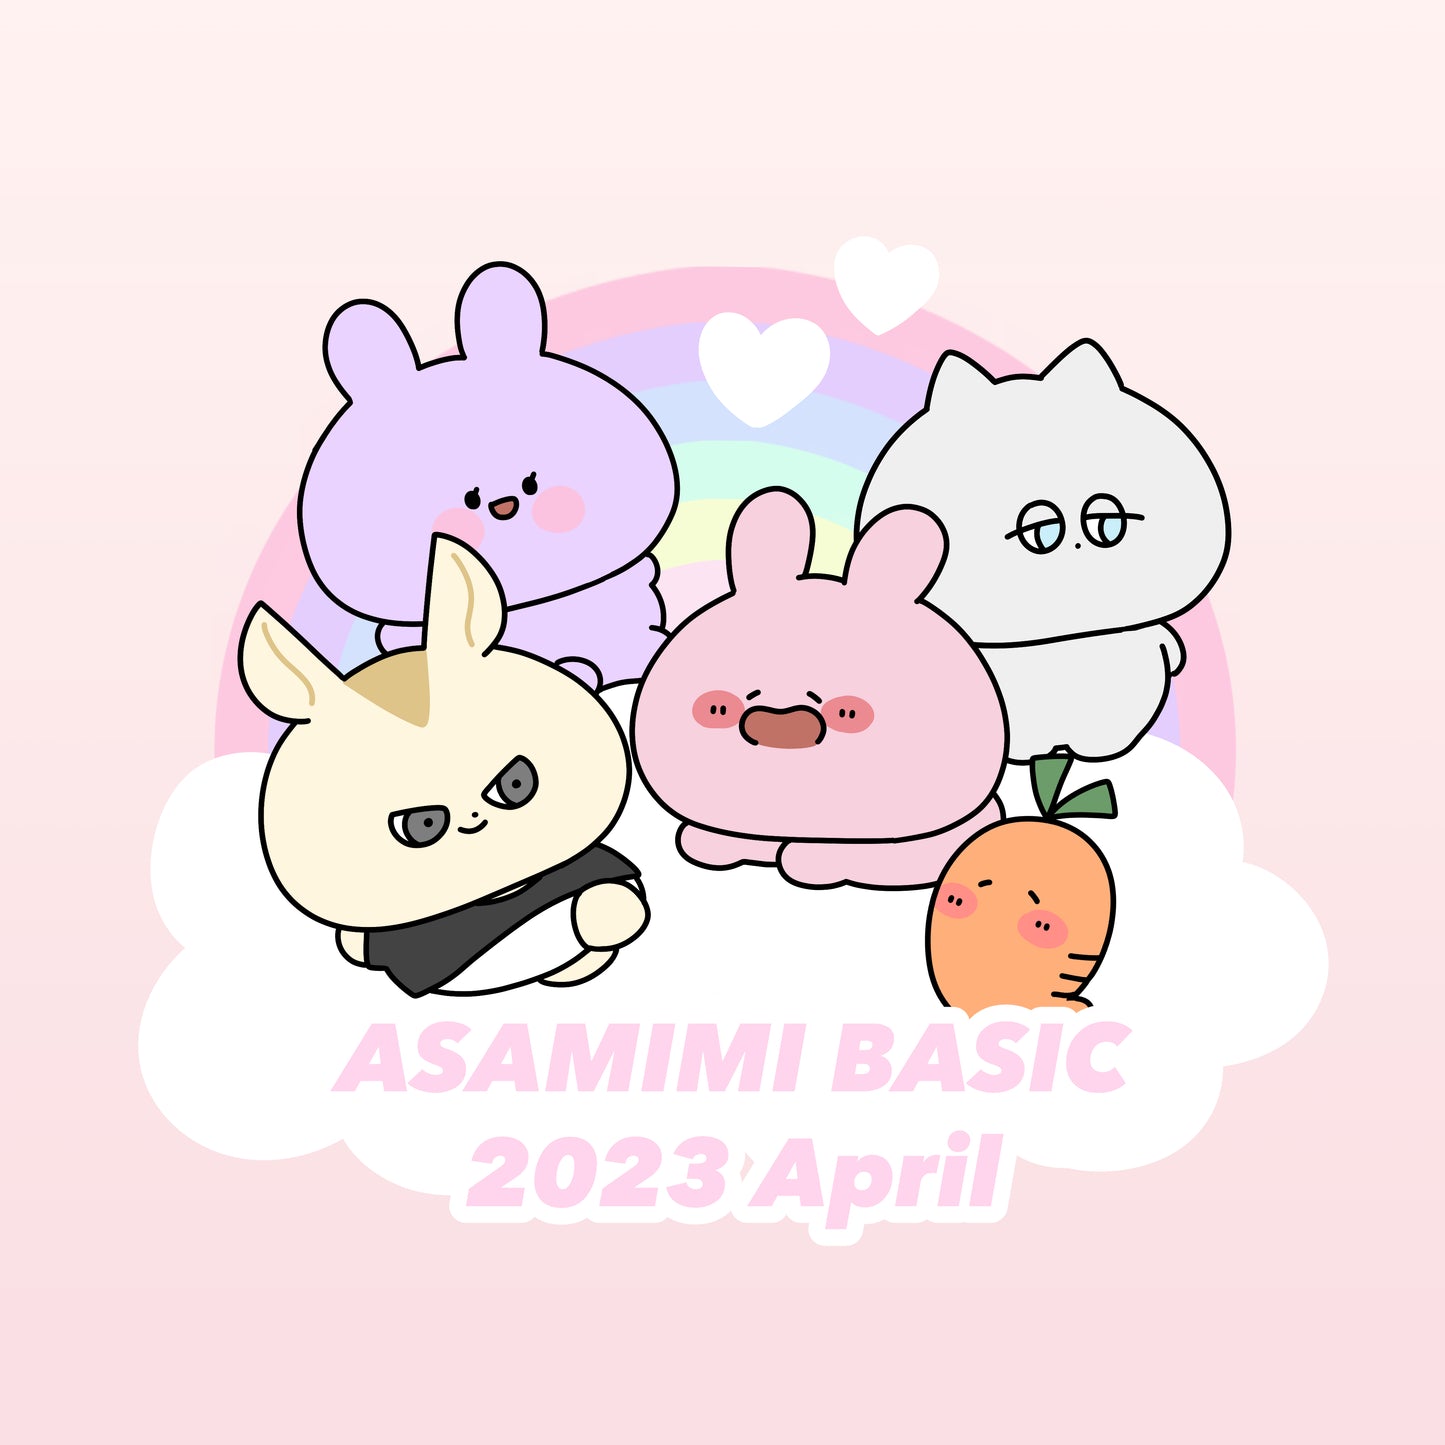 [Asamimi-chan] Tazza bicolore (Asamimi BASIC 2023 aprile) [Spedito all'inizio di giugno]